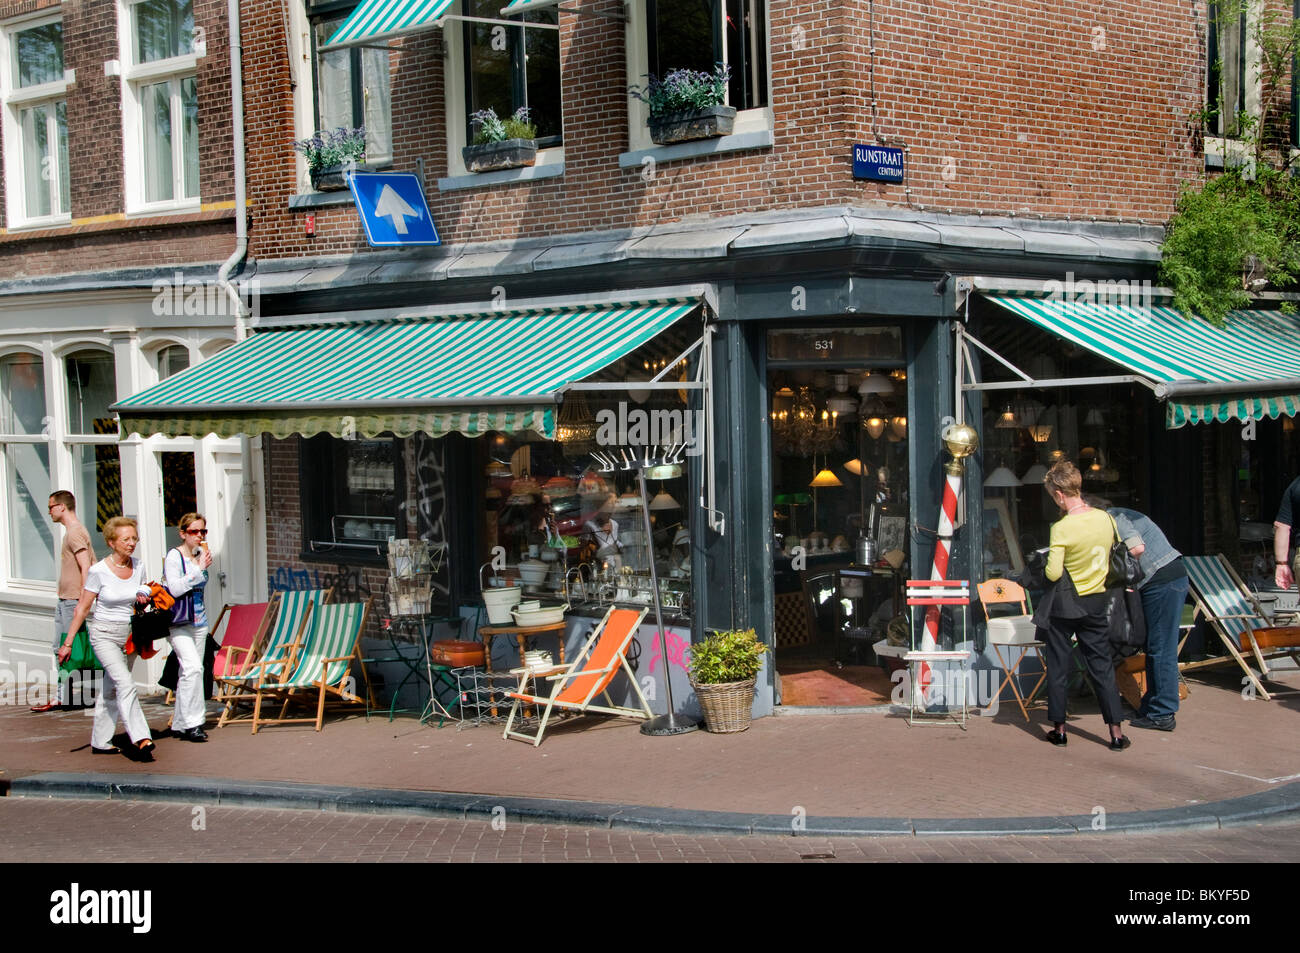 The Netherlands market antique ( de negen straatjes - nine little streets )  Jordaan quarter of Amsterdam Stock Photo